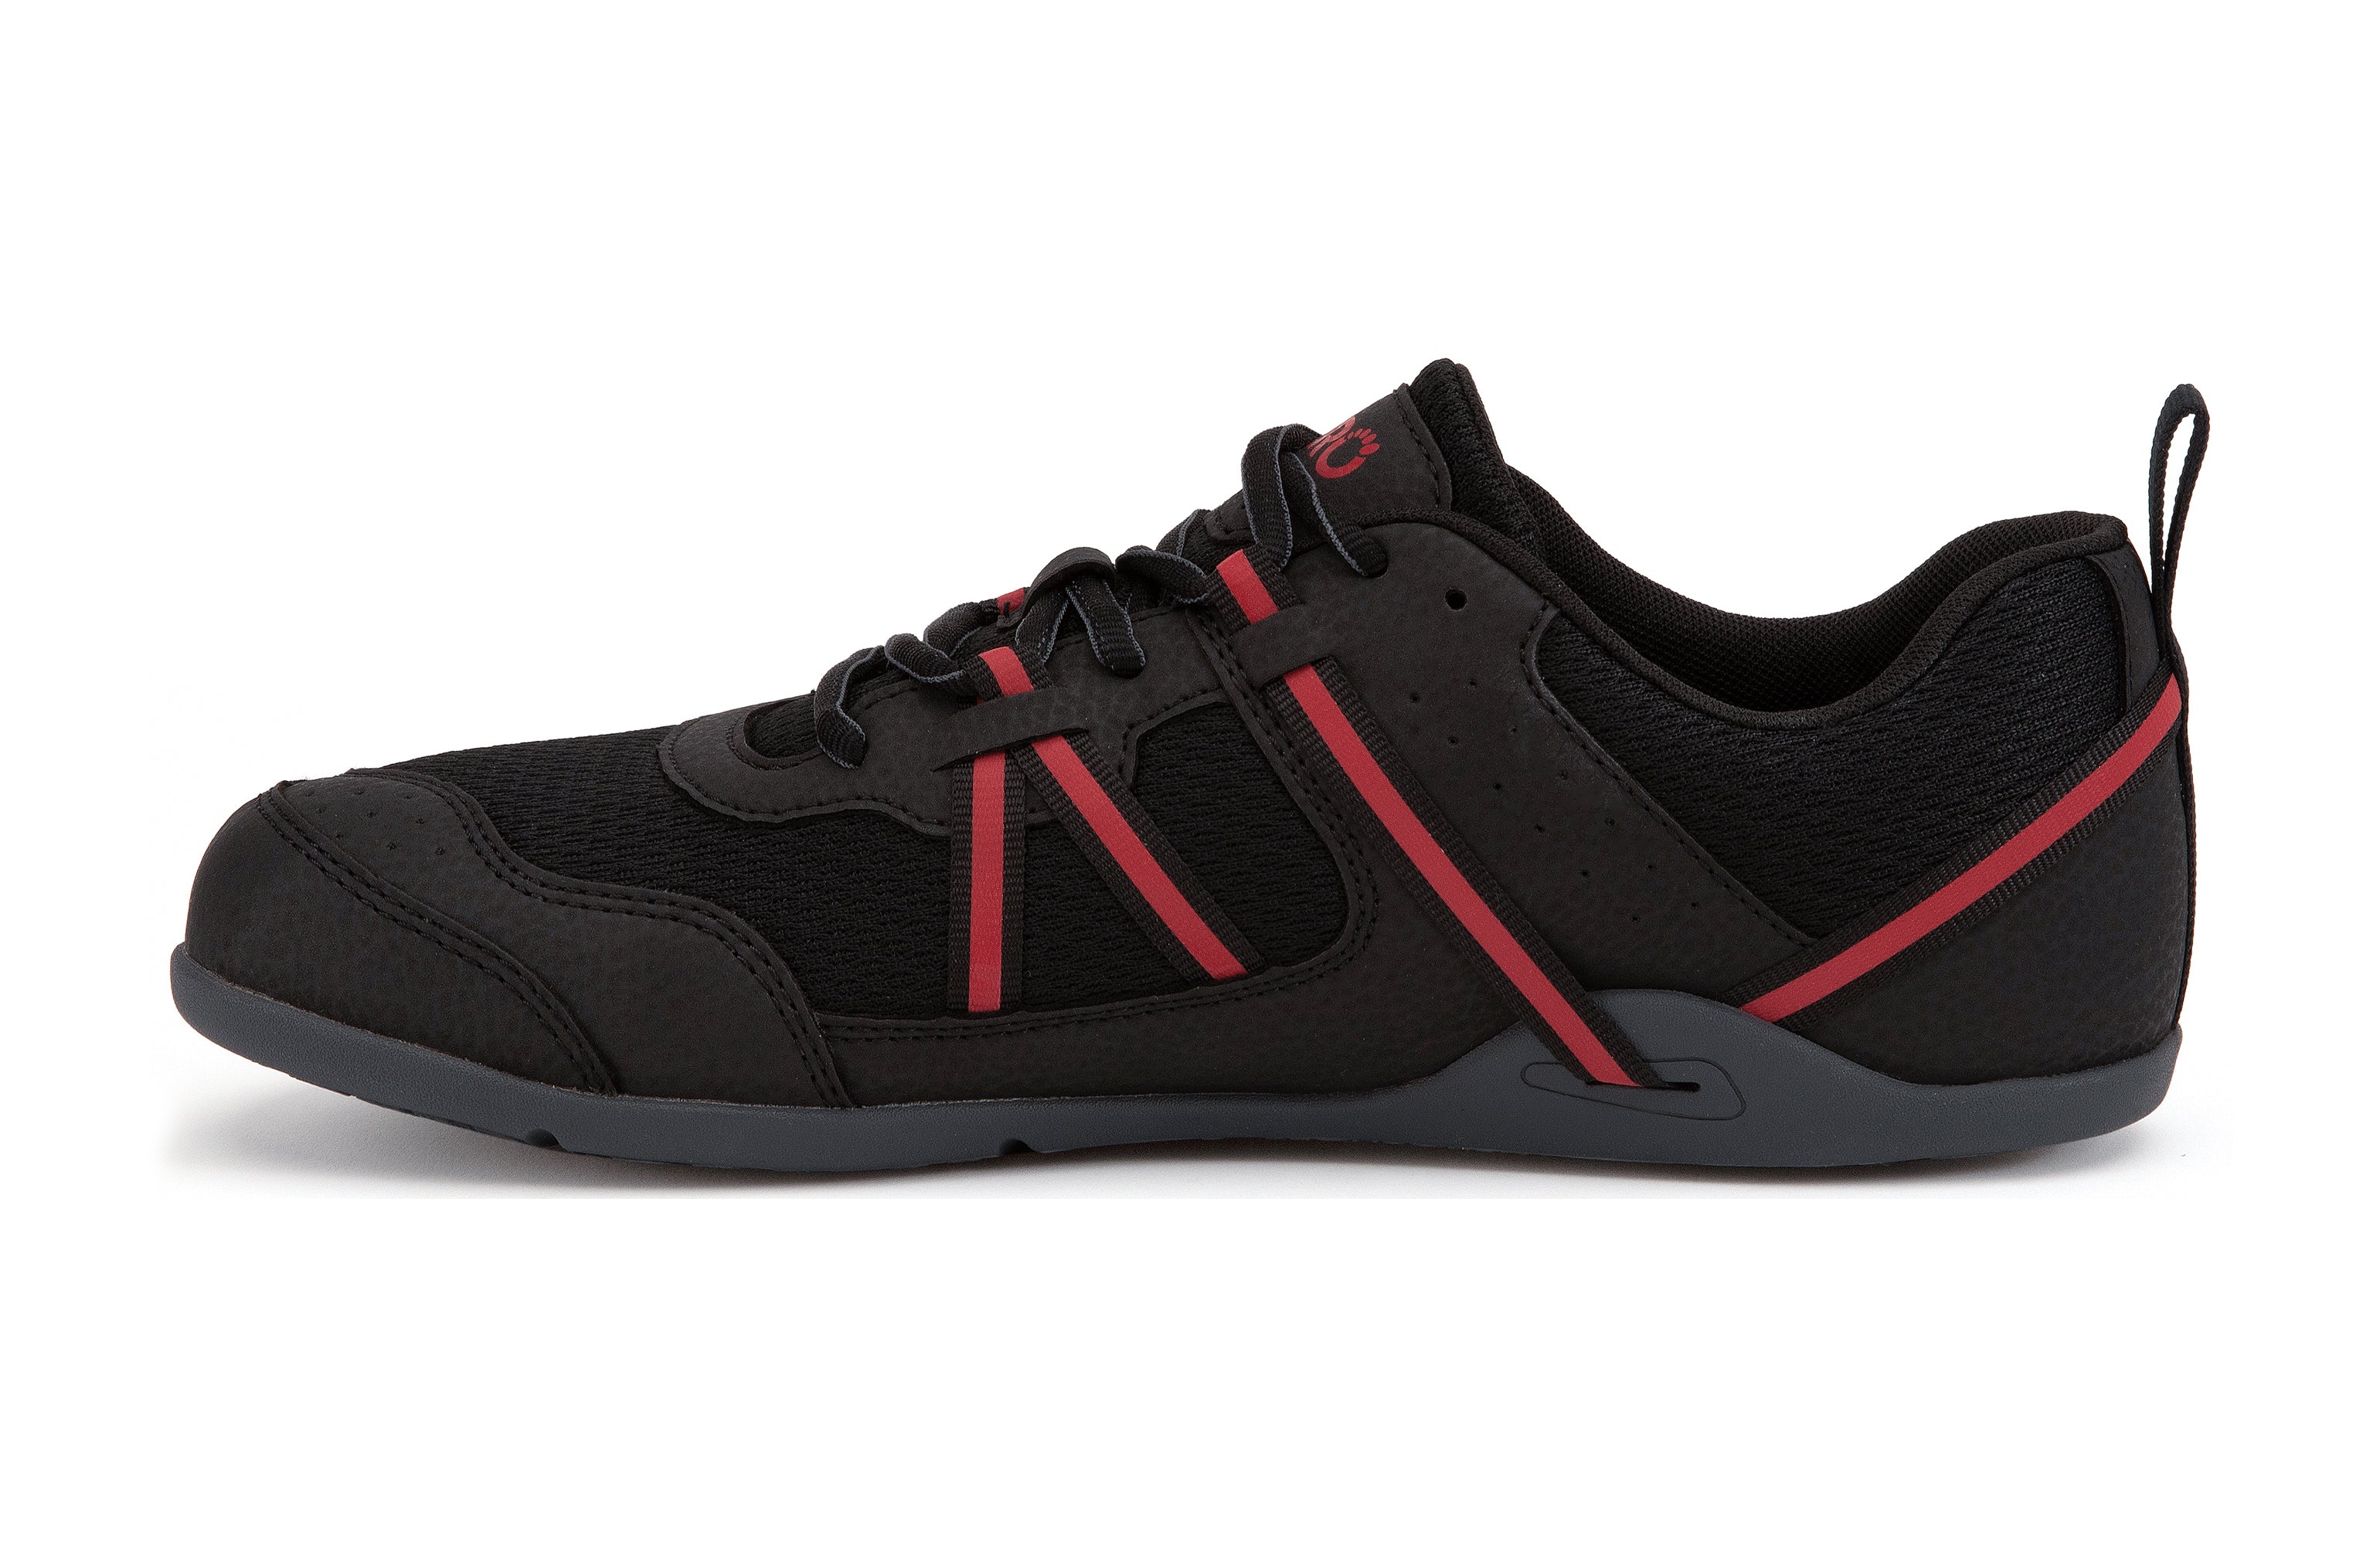 Xero Shoes Prio barfods løbesko/træningssko til mænd i farven black / samba red, inderside